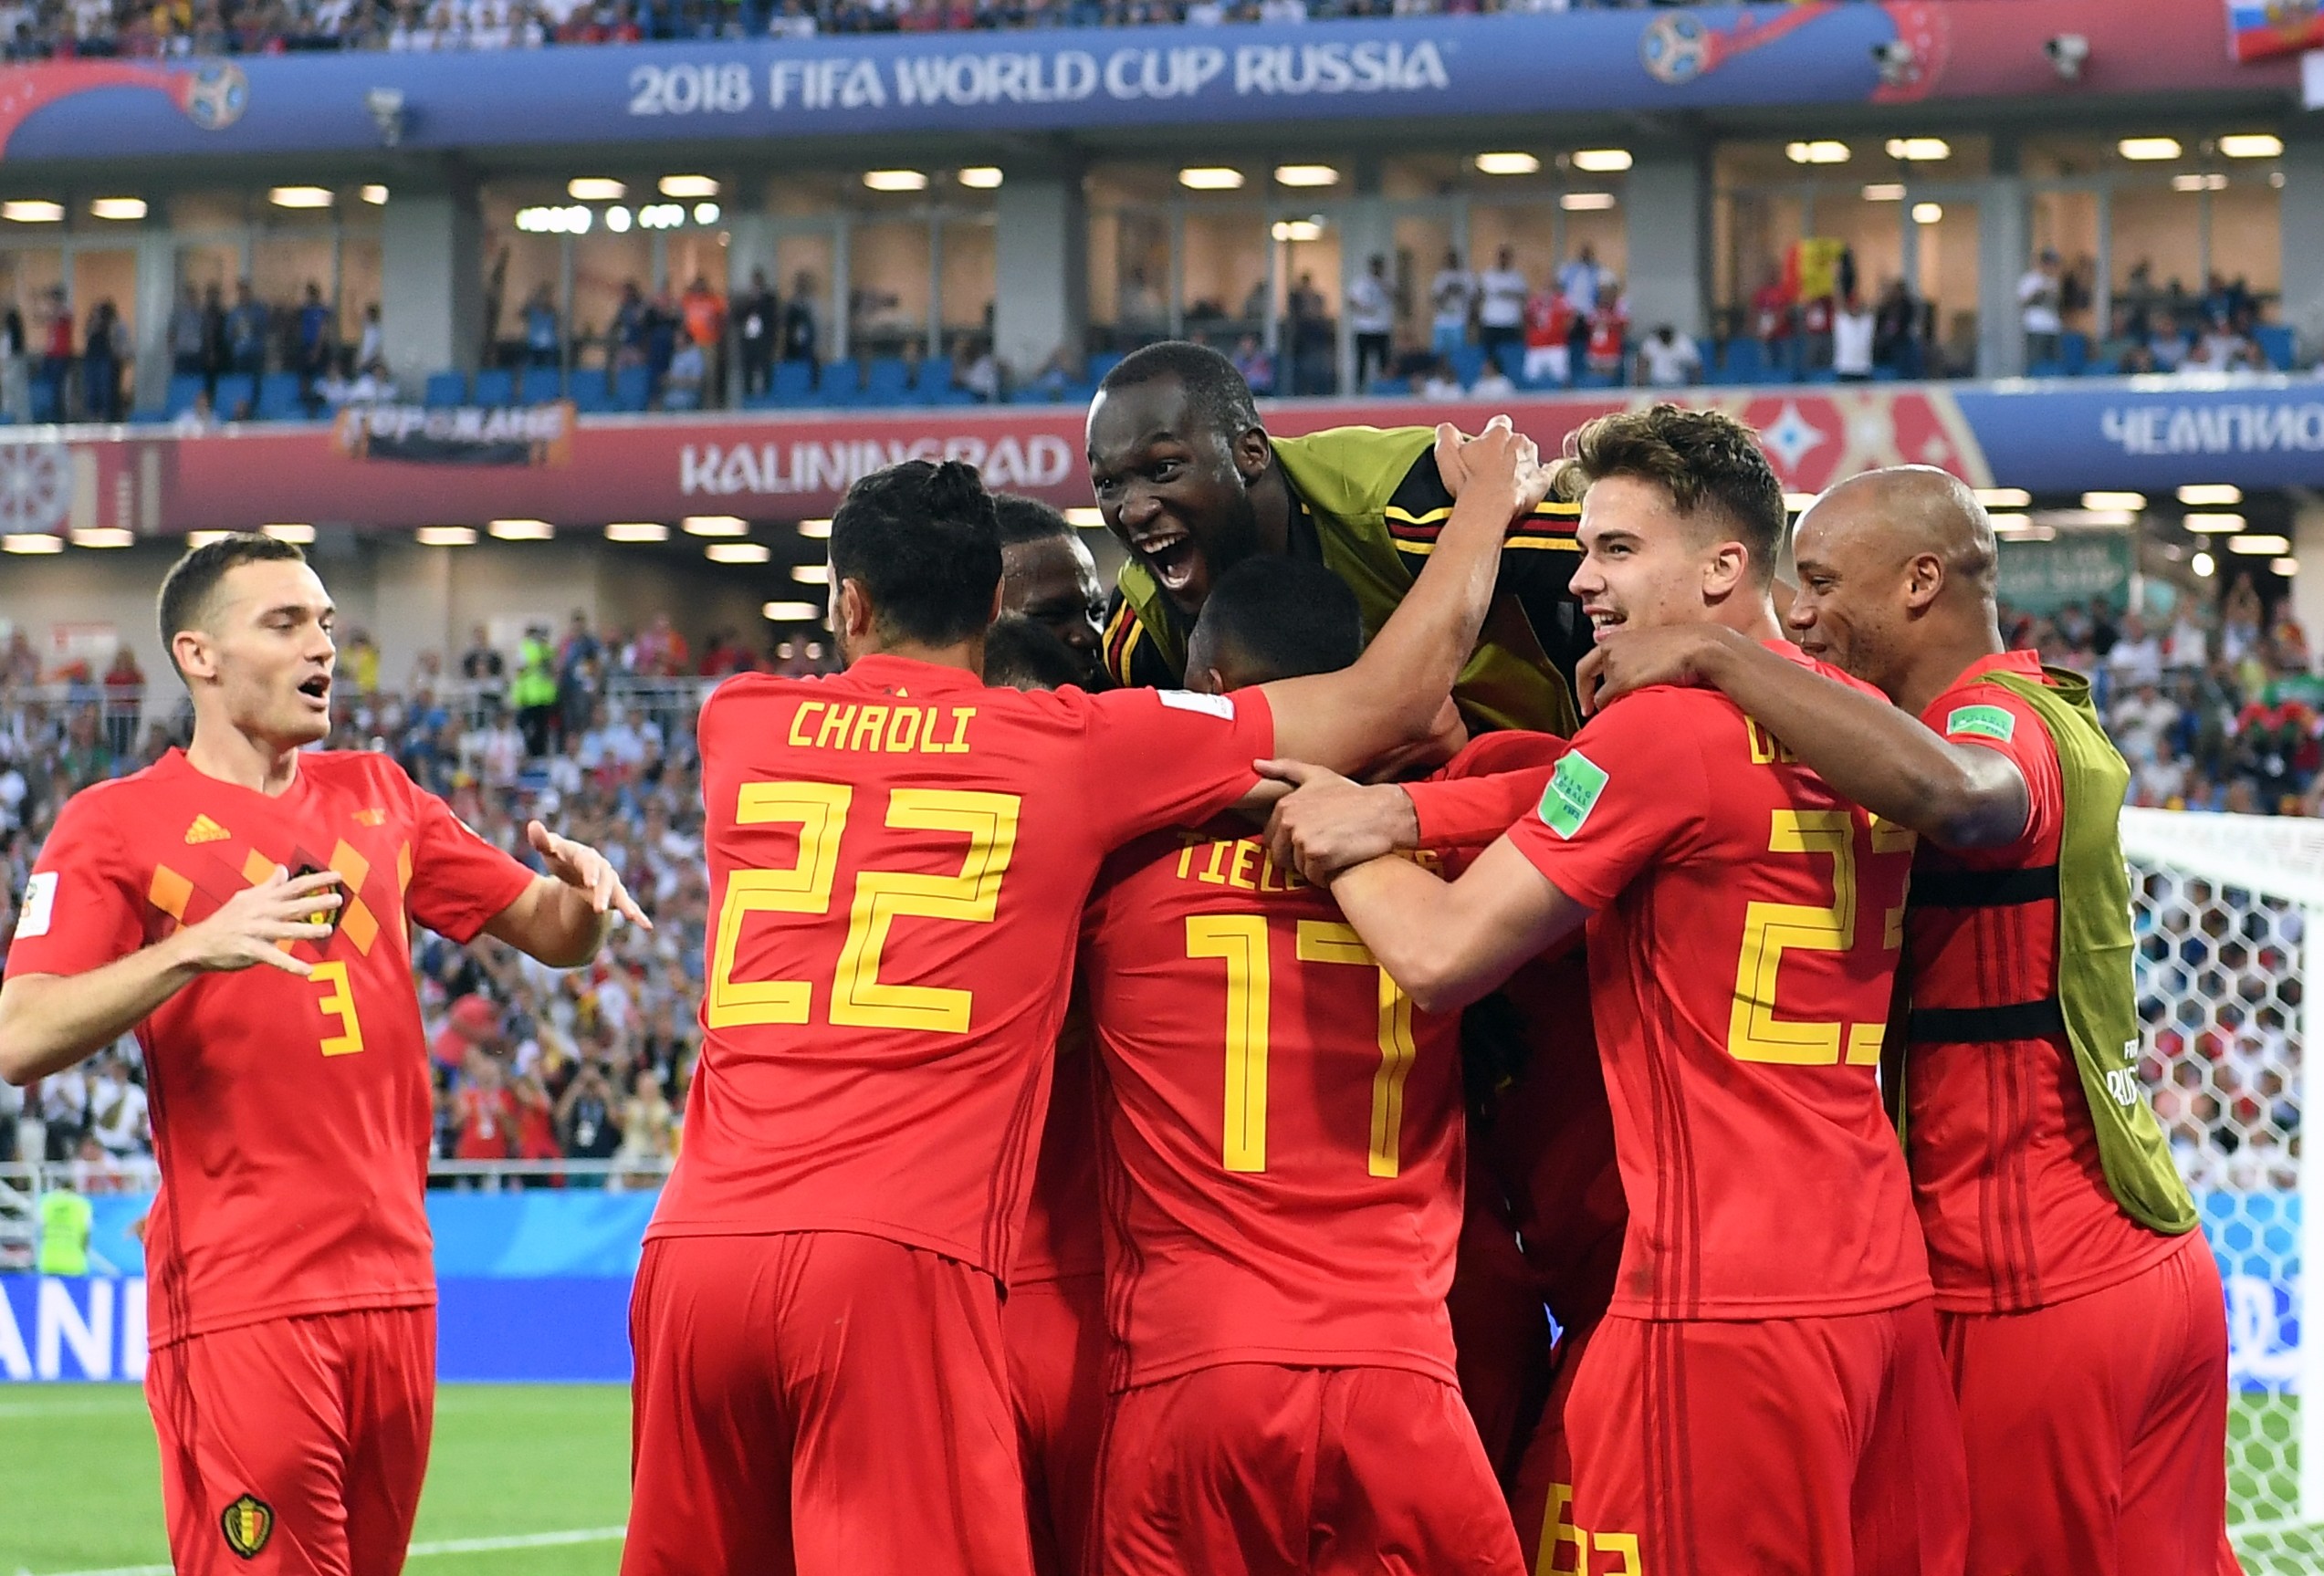 Бельгия — самая результативная сборная этого чемпионата. Фото: РИА Новости / Владимир Песня